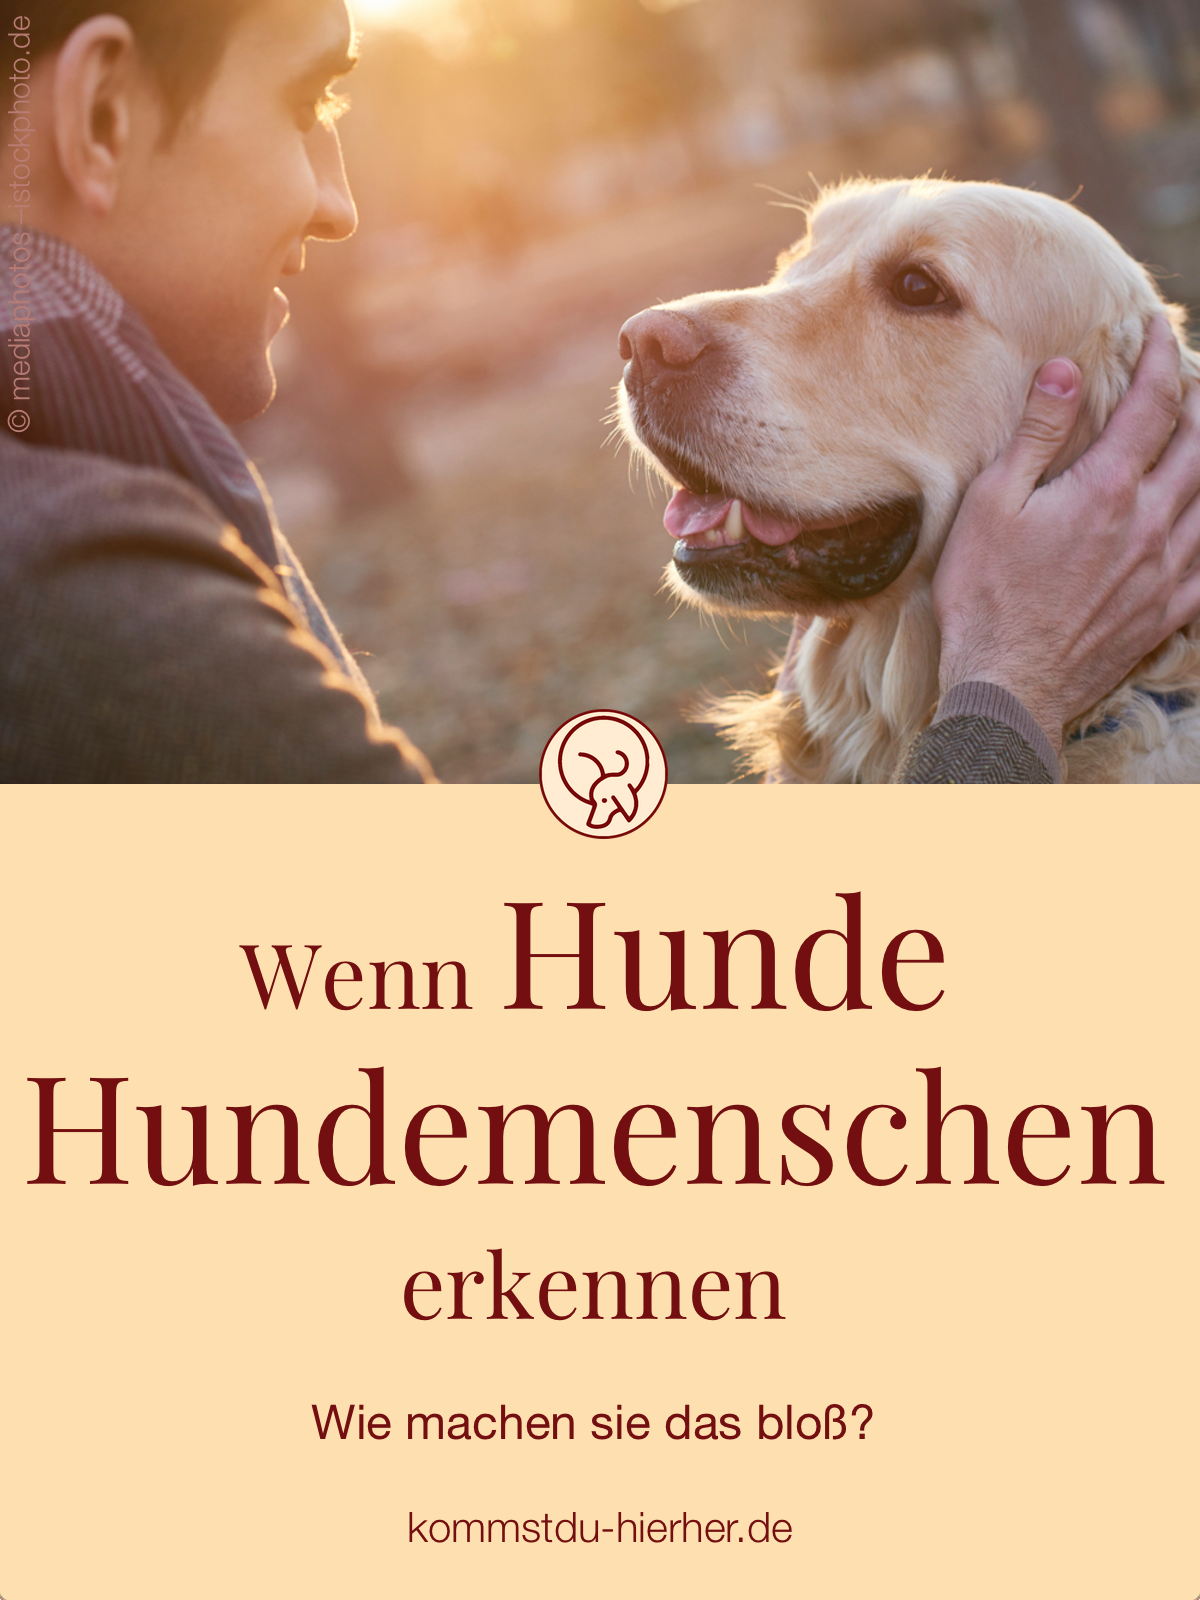 Hund Im Garten Begraben Schön Die 64 Besten Bilder Von Hund & Alltag